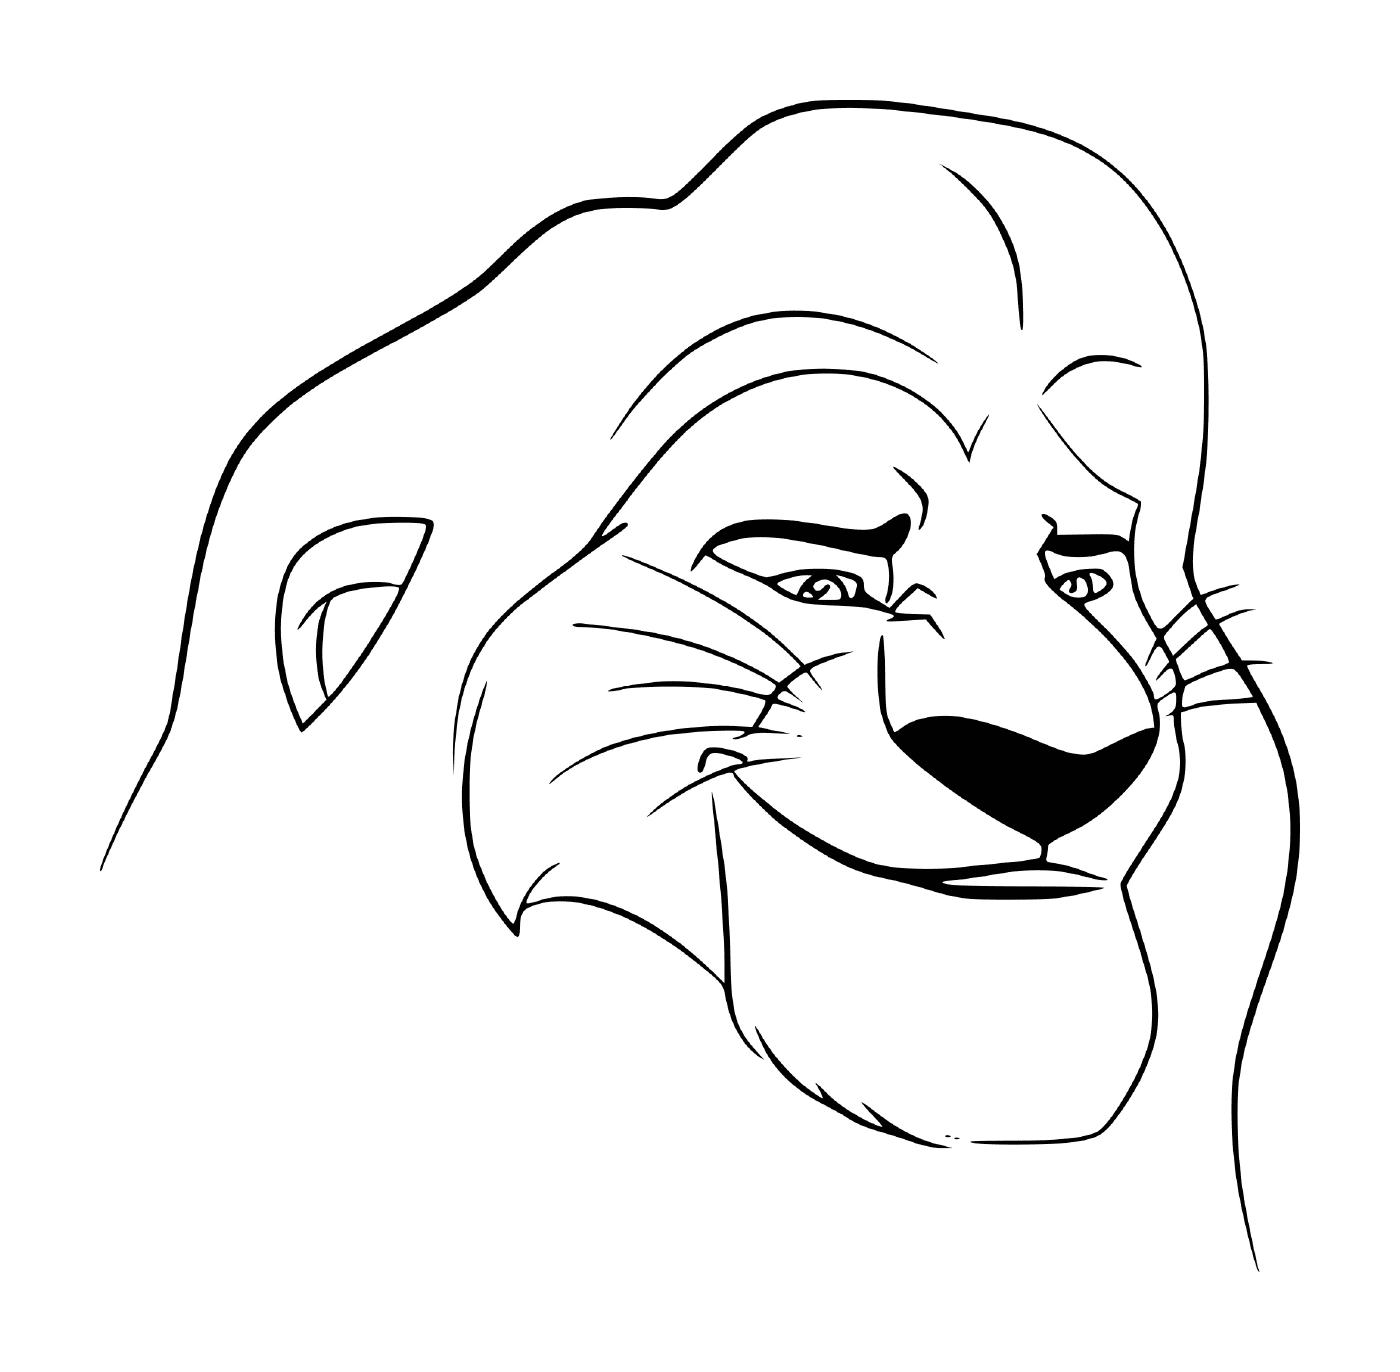  Cara de Mufasa, personagem do Rei Leão 